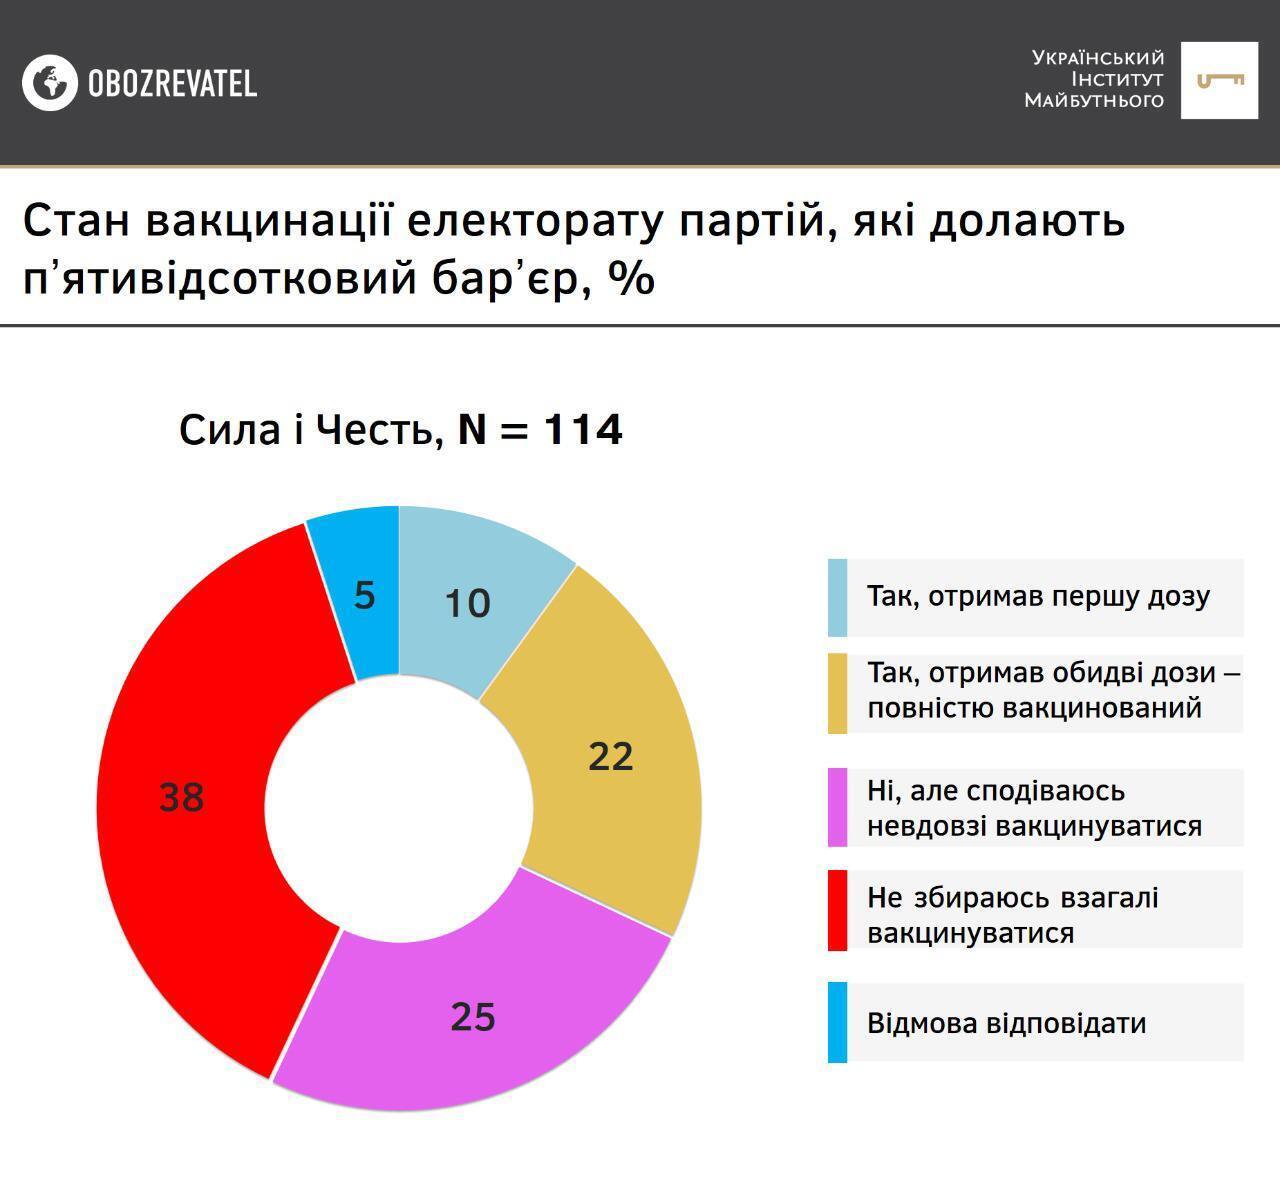 Результаты опроса среди сторонников партии "Сила и честь"